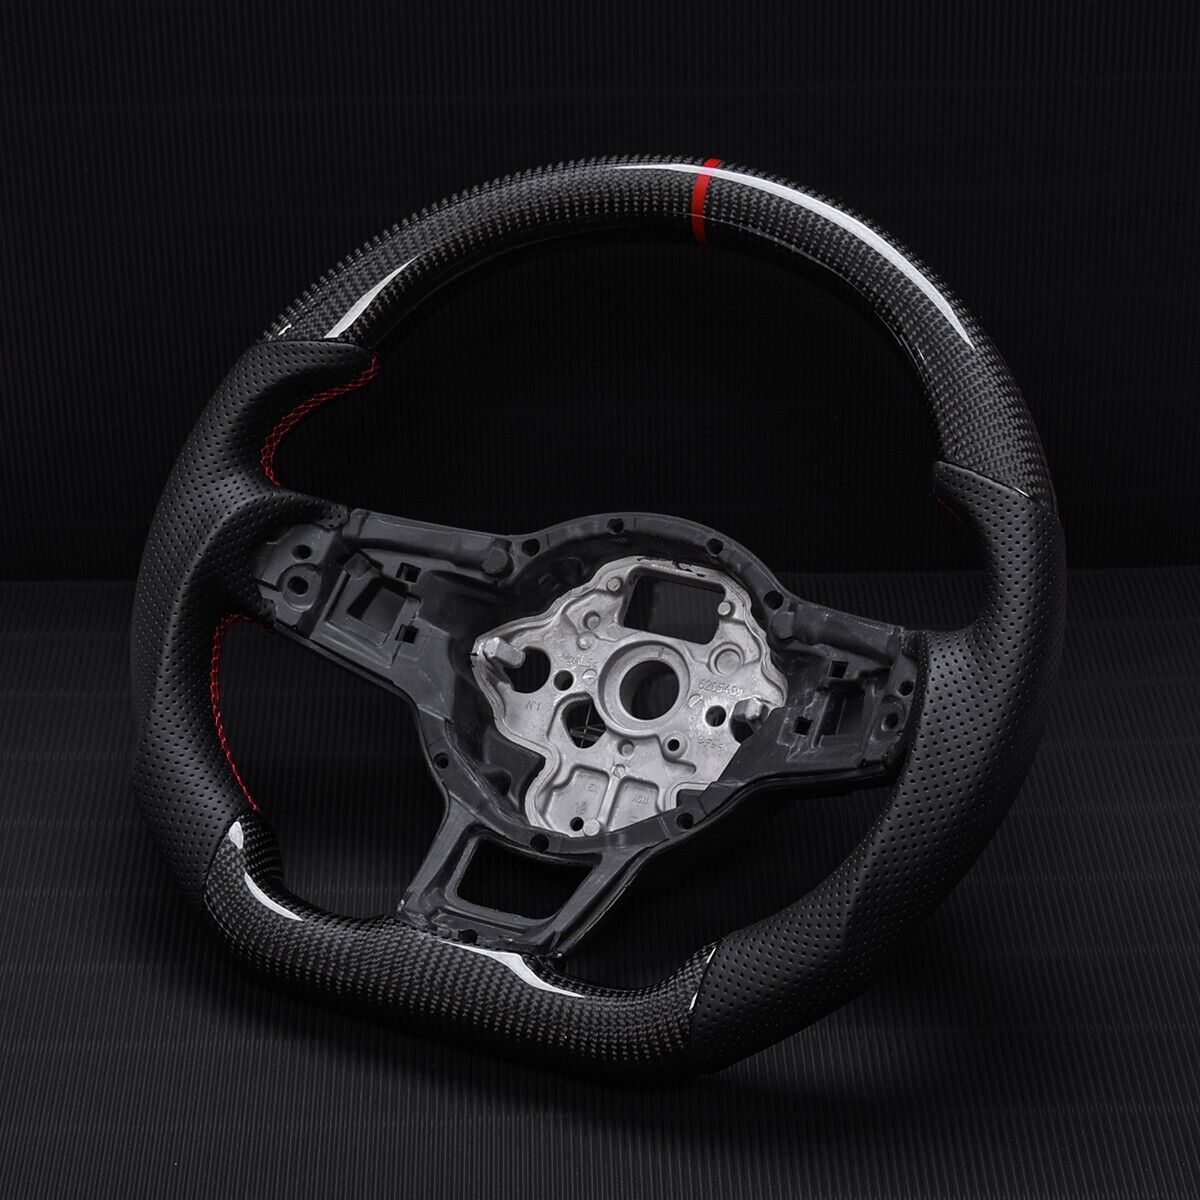 Real carbon fiber Sport Steering Wheel VW MK7/7.5 Golf GTI Jetta Polo 2013-2020